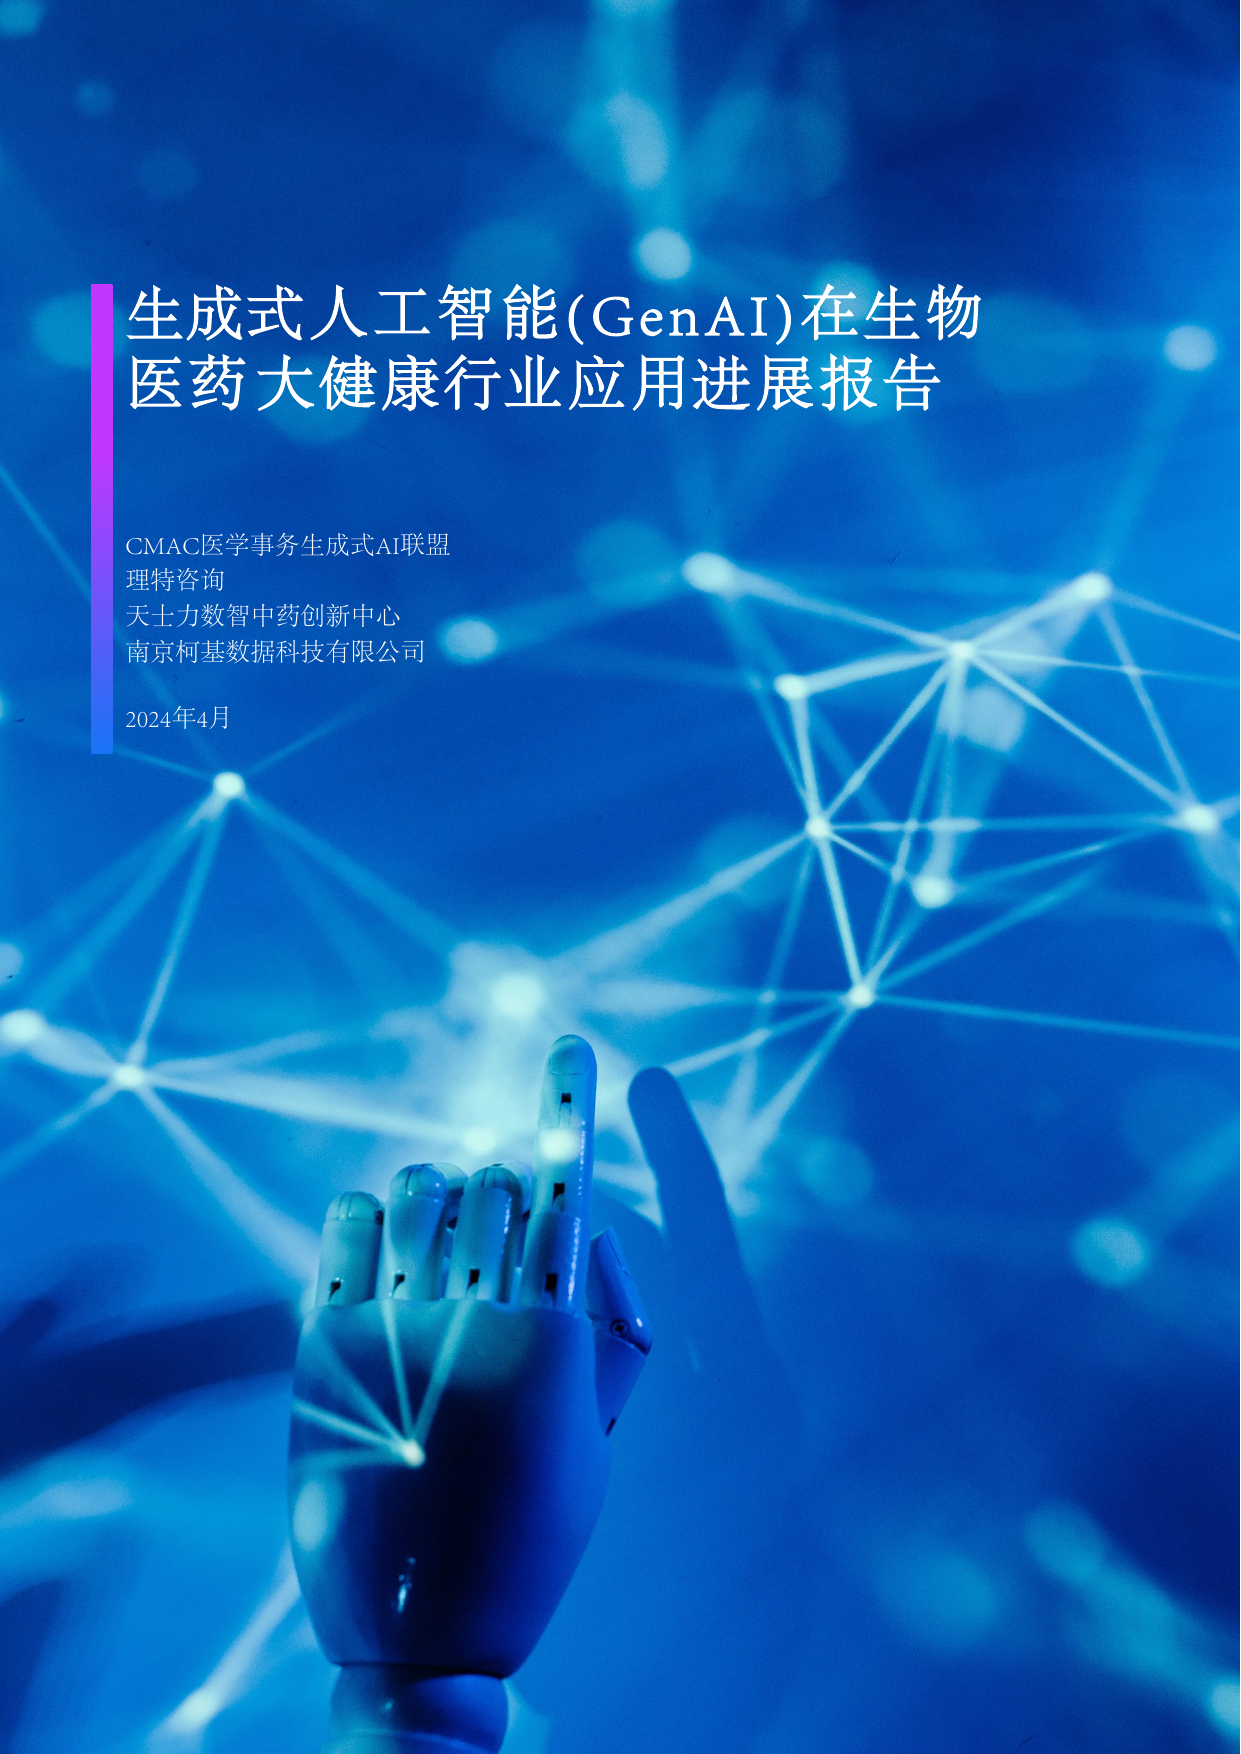 2024生成式人工智能GenAI在生物医药大健康行业应用进展报告-理特咨询-202405.pdf